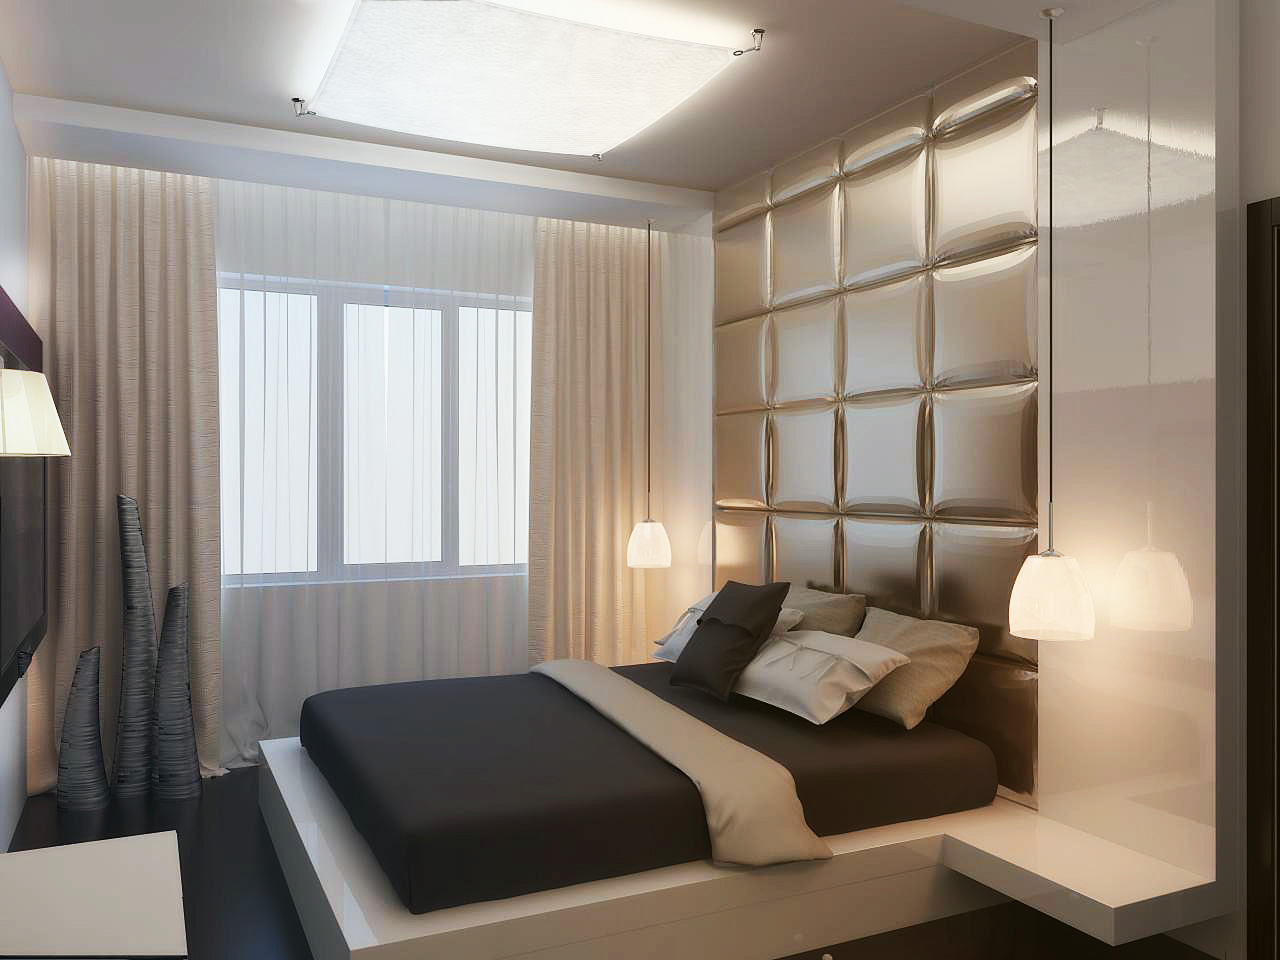 http://sam-sebe-dizainer.com/public/images/Современный дизайн спальни 2014, пример